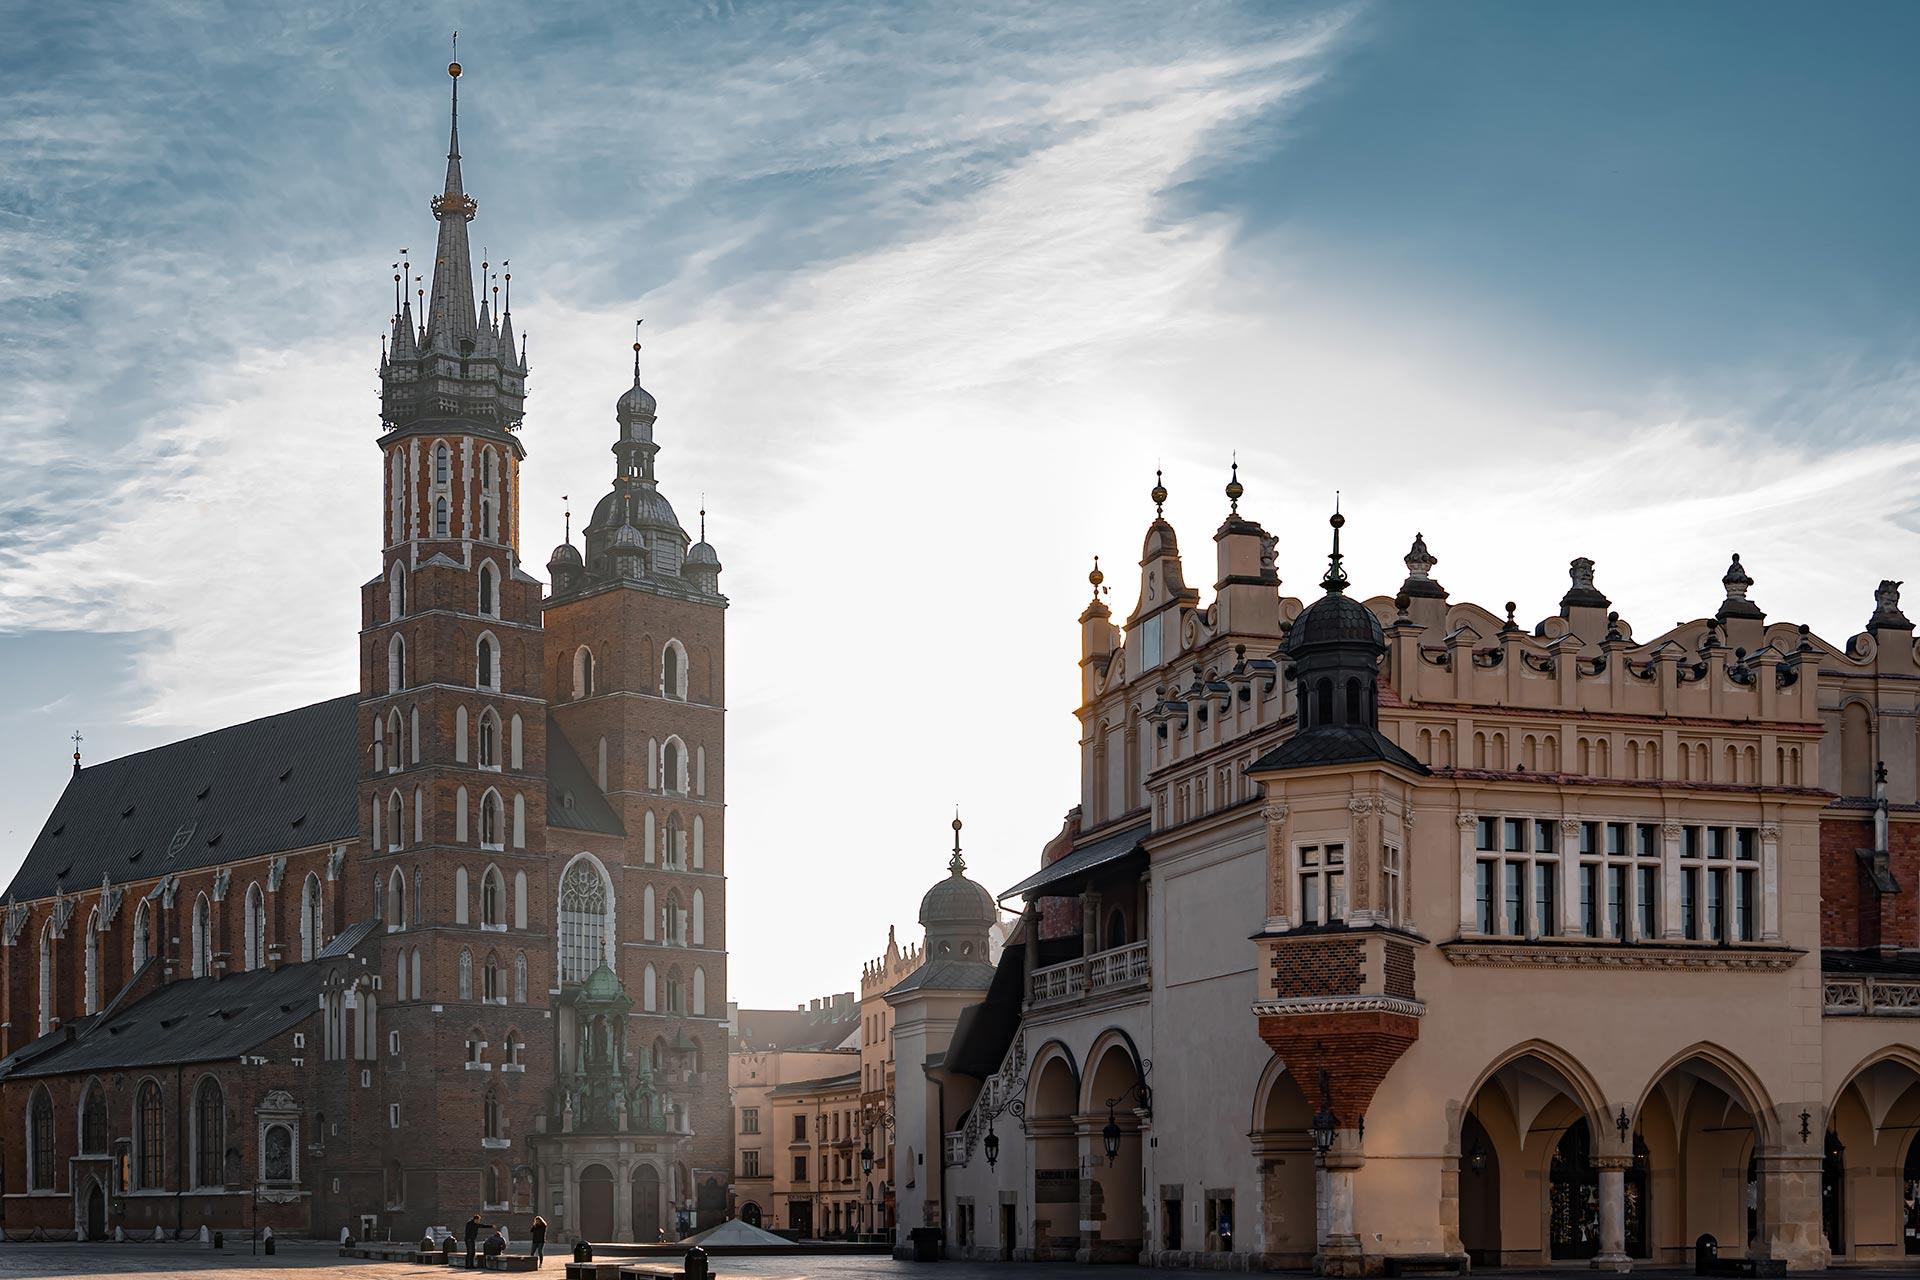 City of Krakow